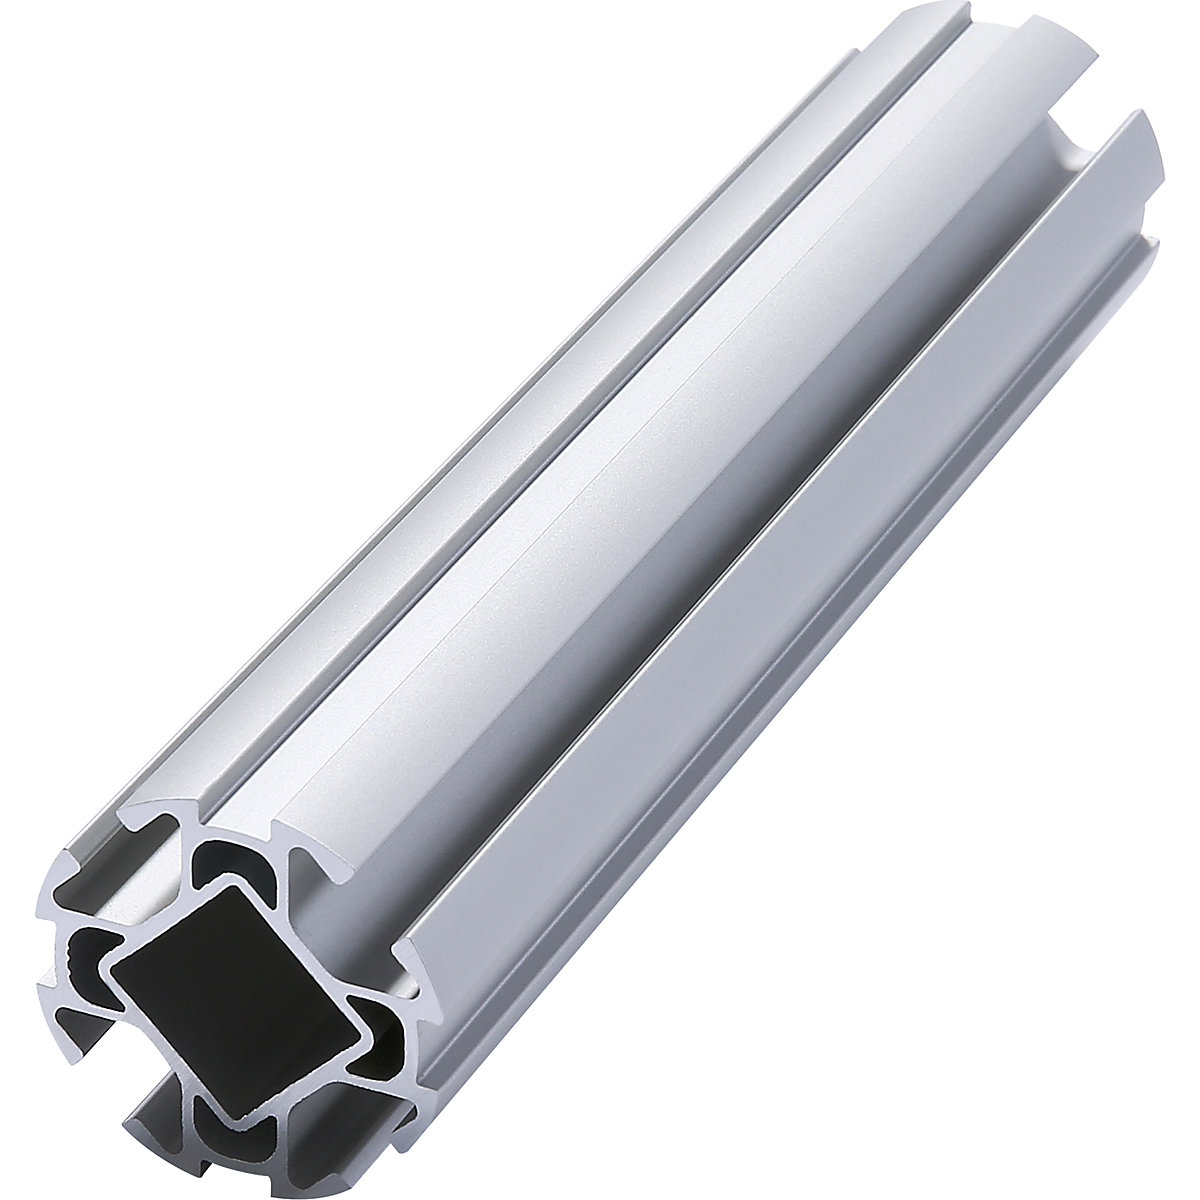 Tubo de perfil de aluminio NGP40, longitud 4000 mm, Ø 40 mm, a partir de 20 unid.